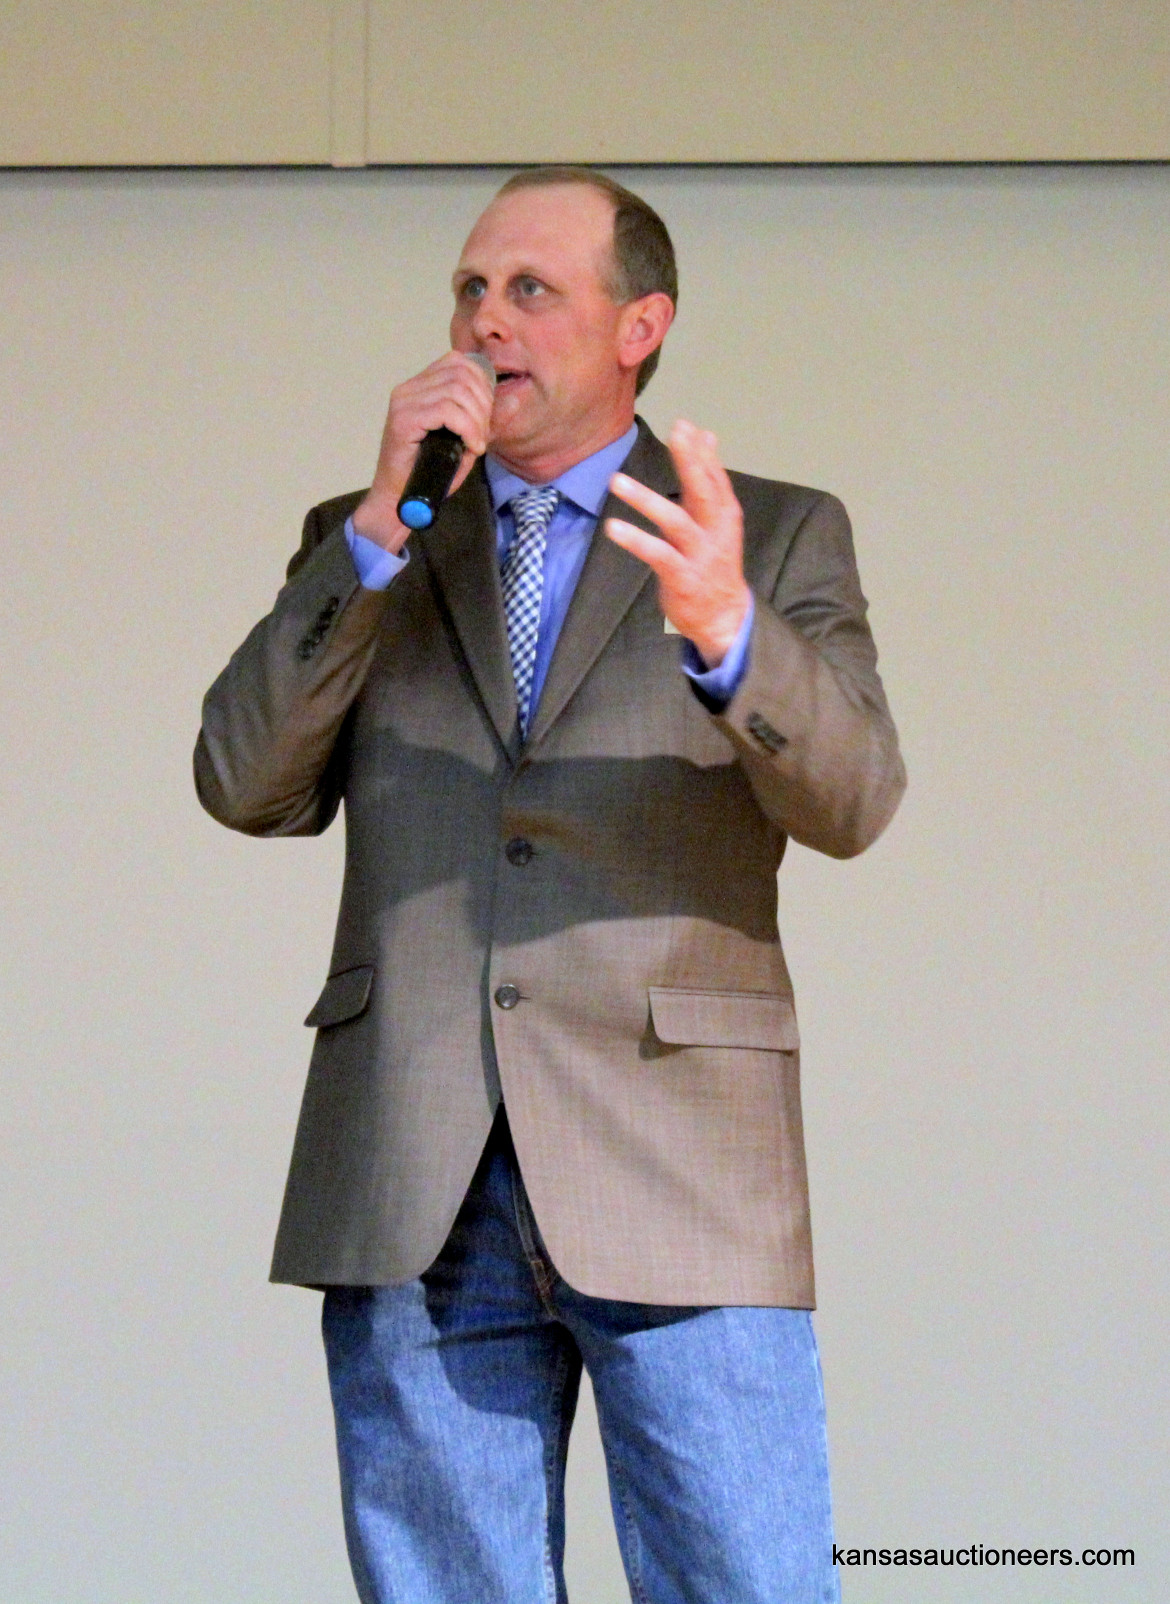 Rodney Burdiek competing in the 2016 Kansas Auctioneer Preliminaries.